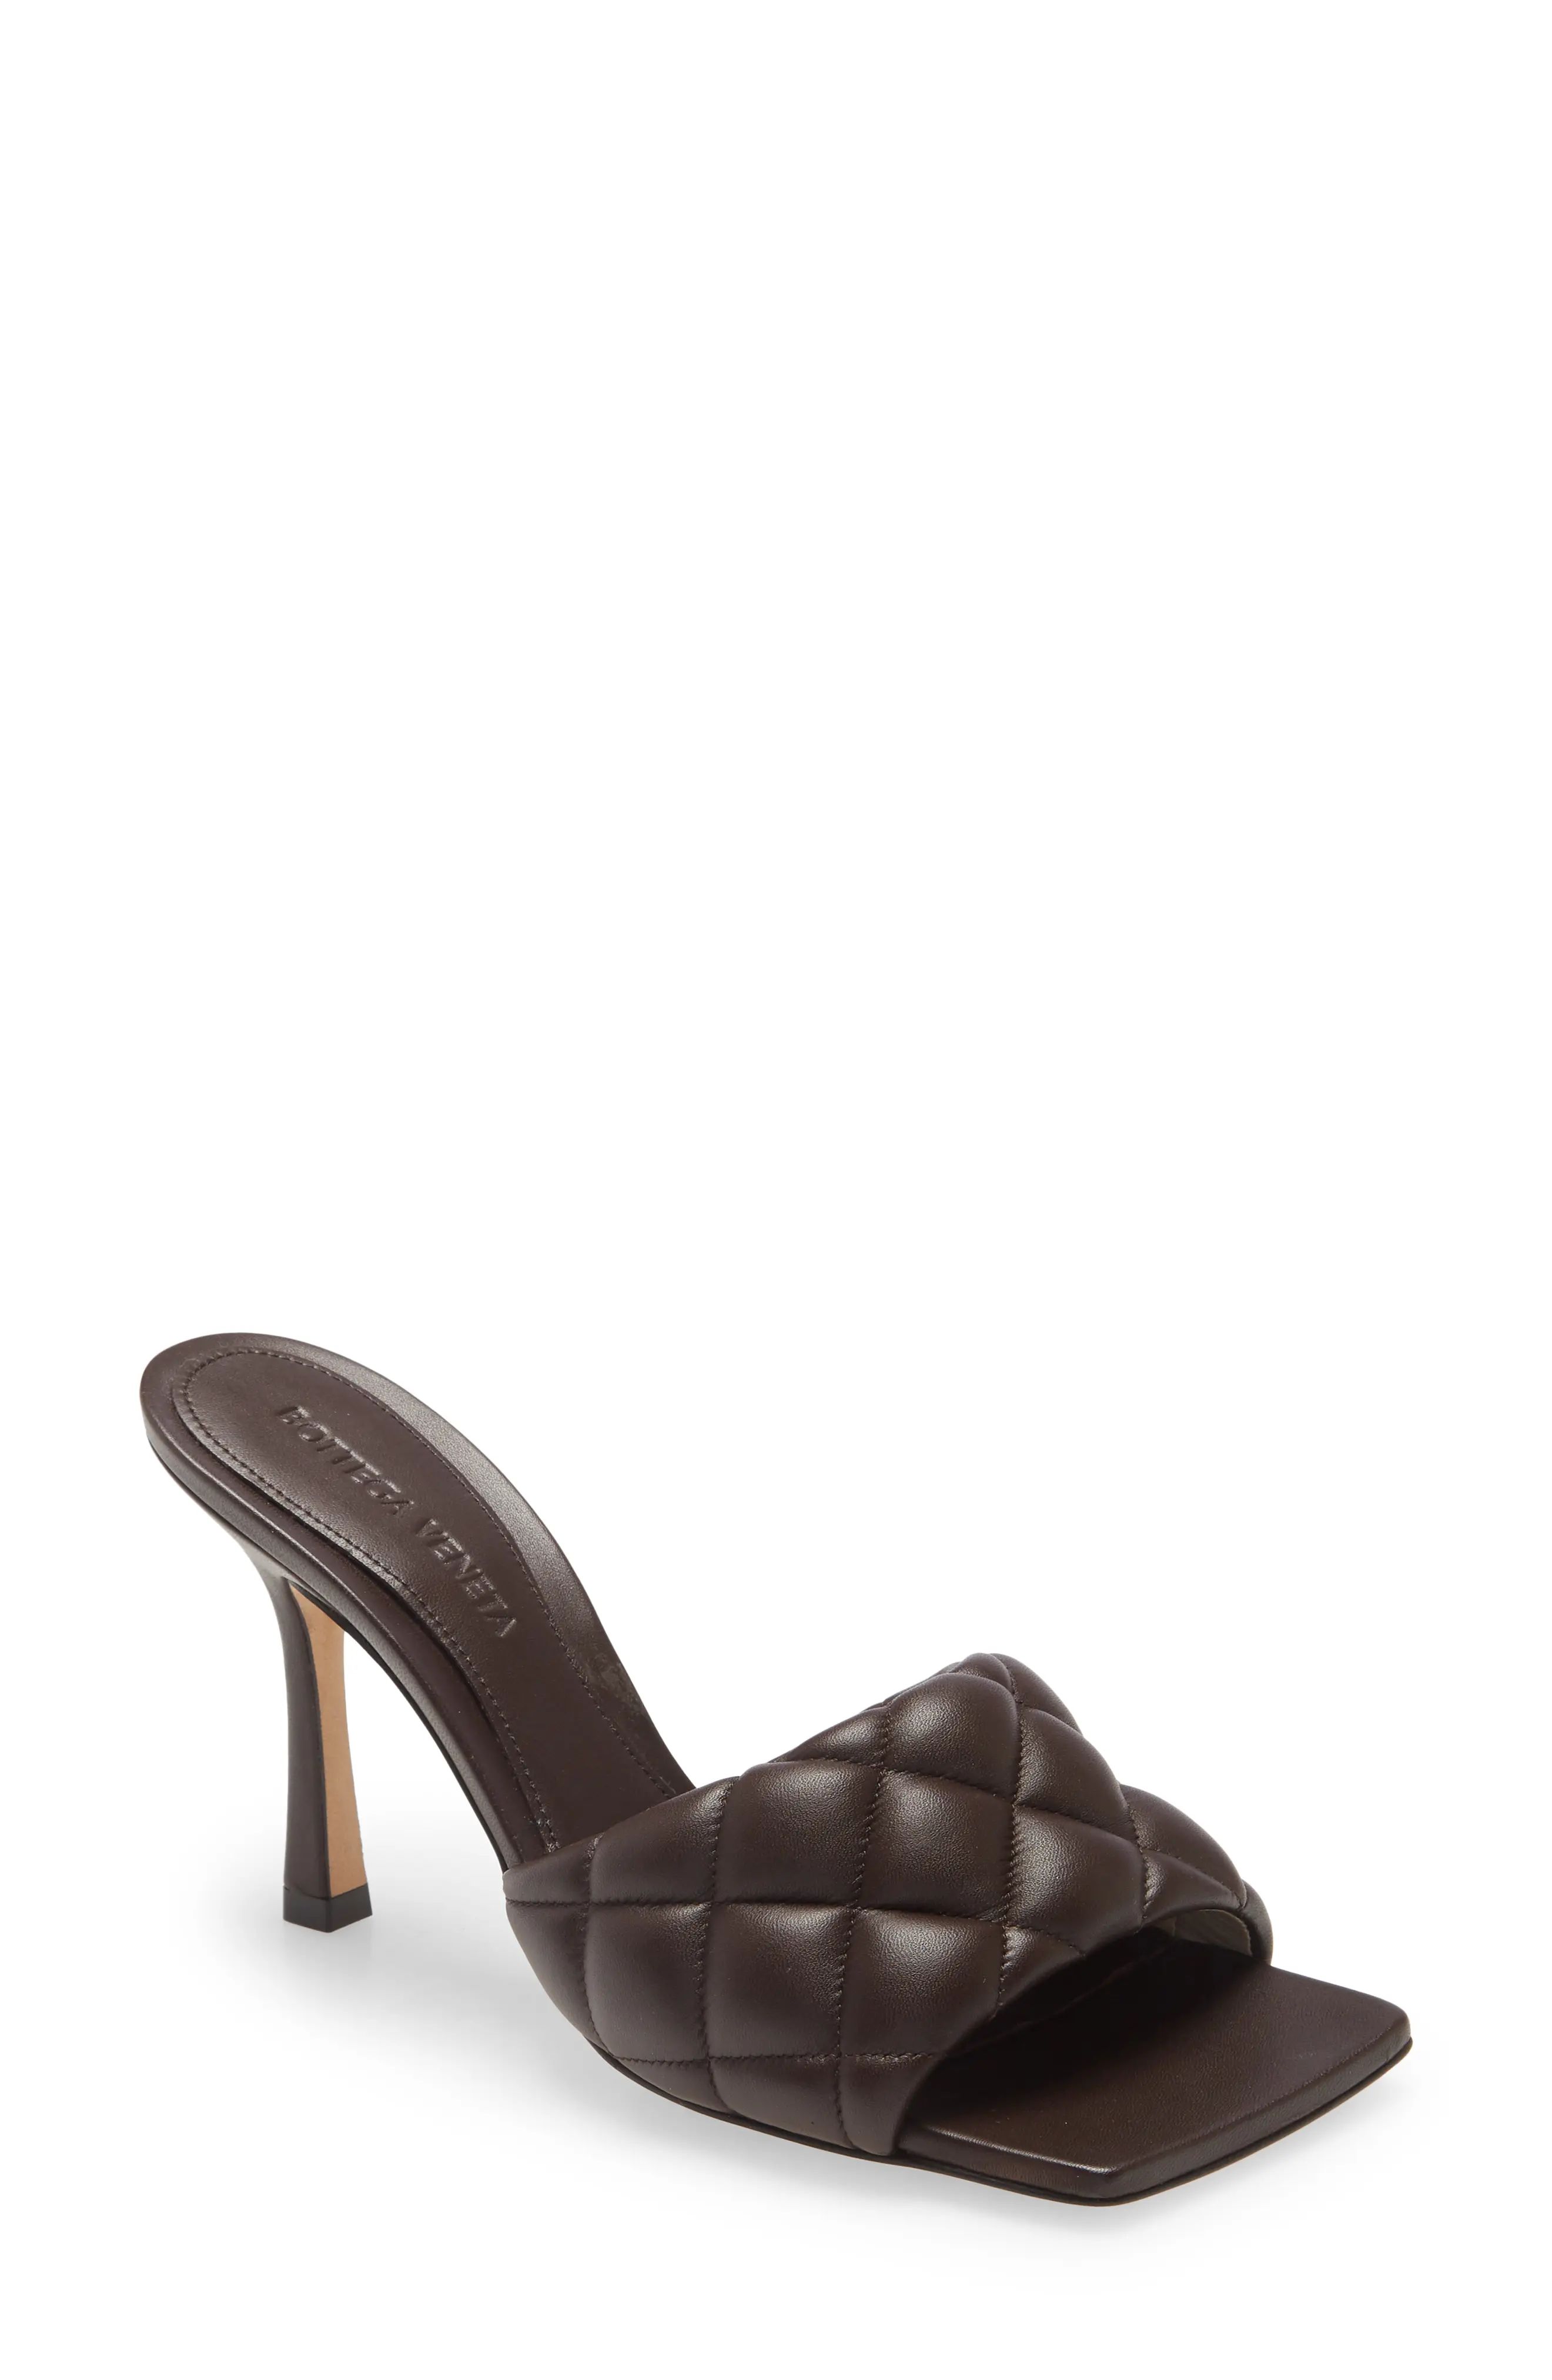 Women's Bottega Veneta Padded Slide Sandal, Size 6US - Brown | Nordstrom